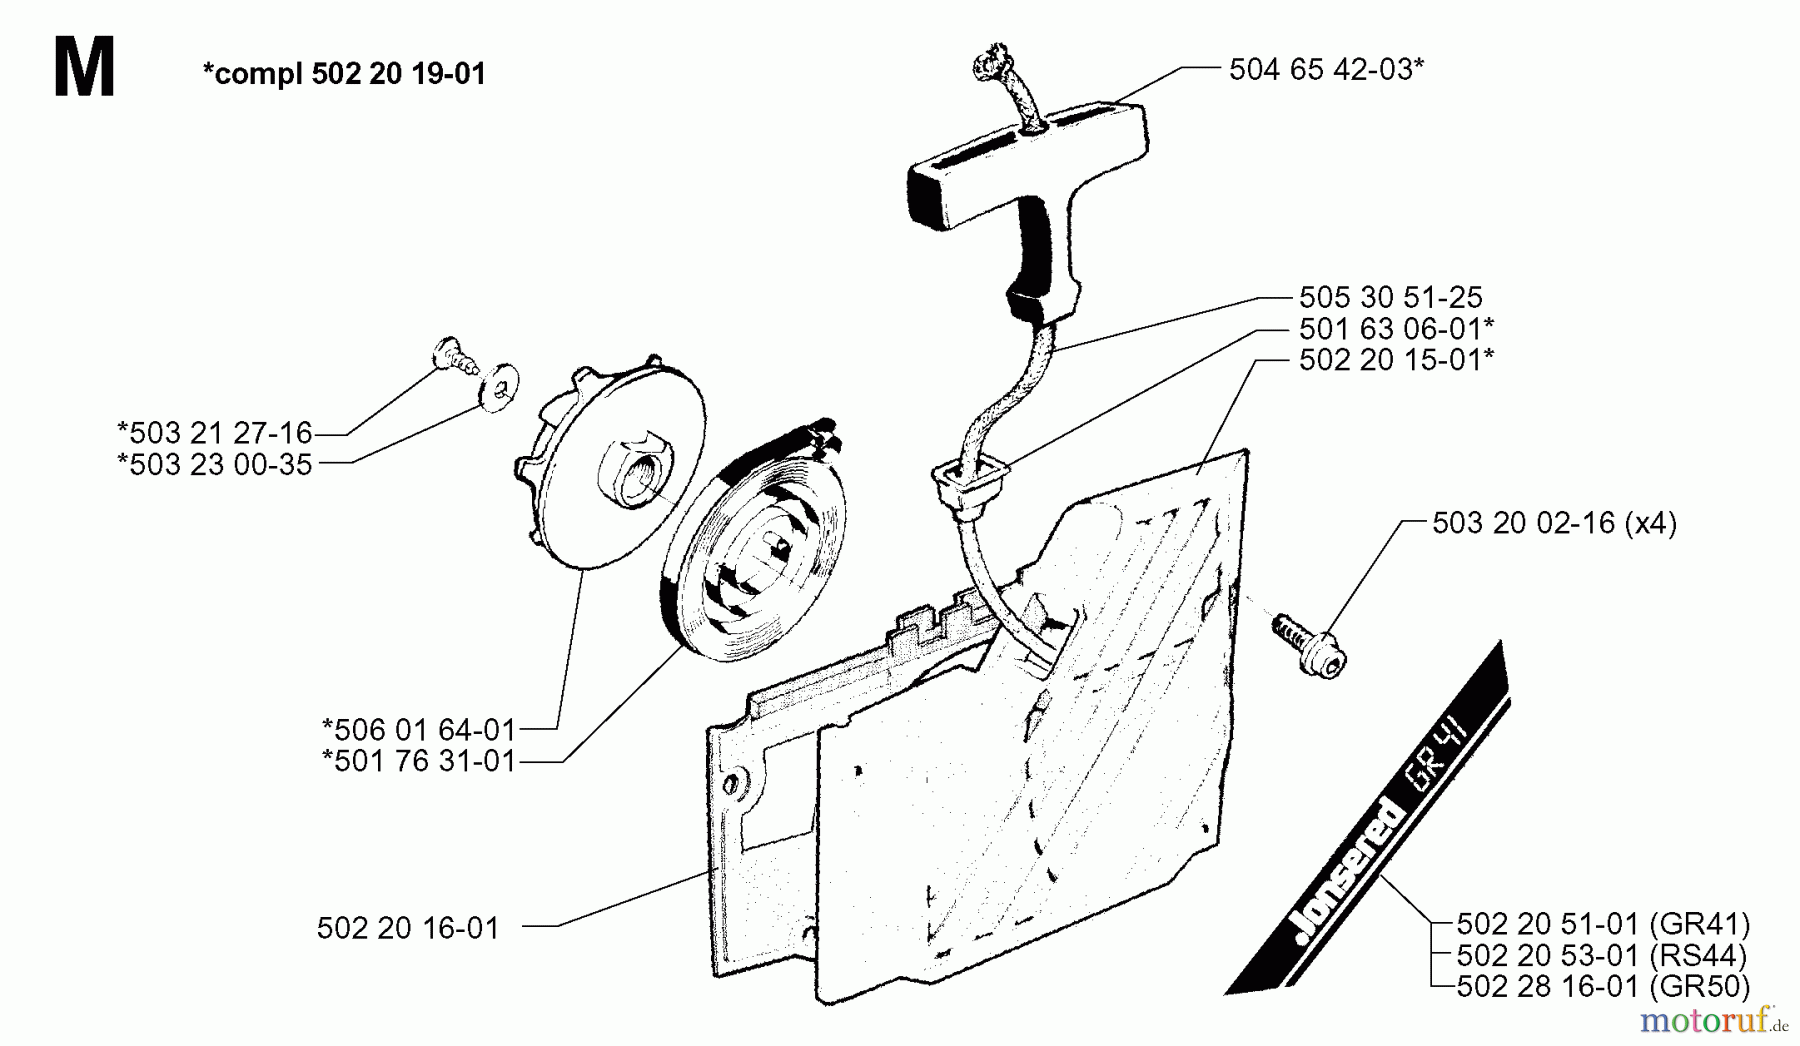  Jonsered Motorsensen, Trimmer GR50 - Jonsered String/Brush Trimmer (1998-06) STARTER